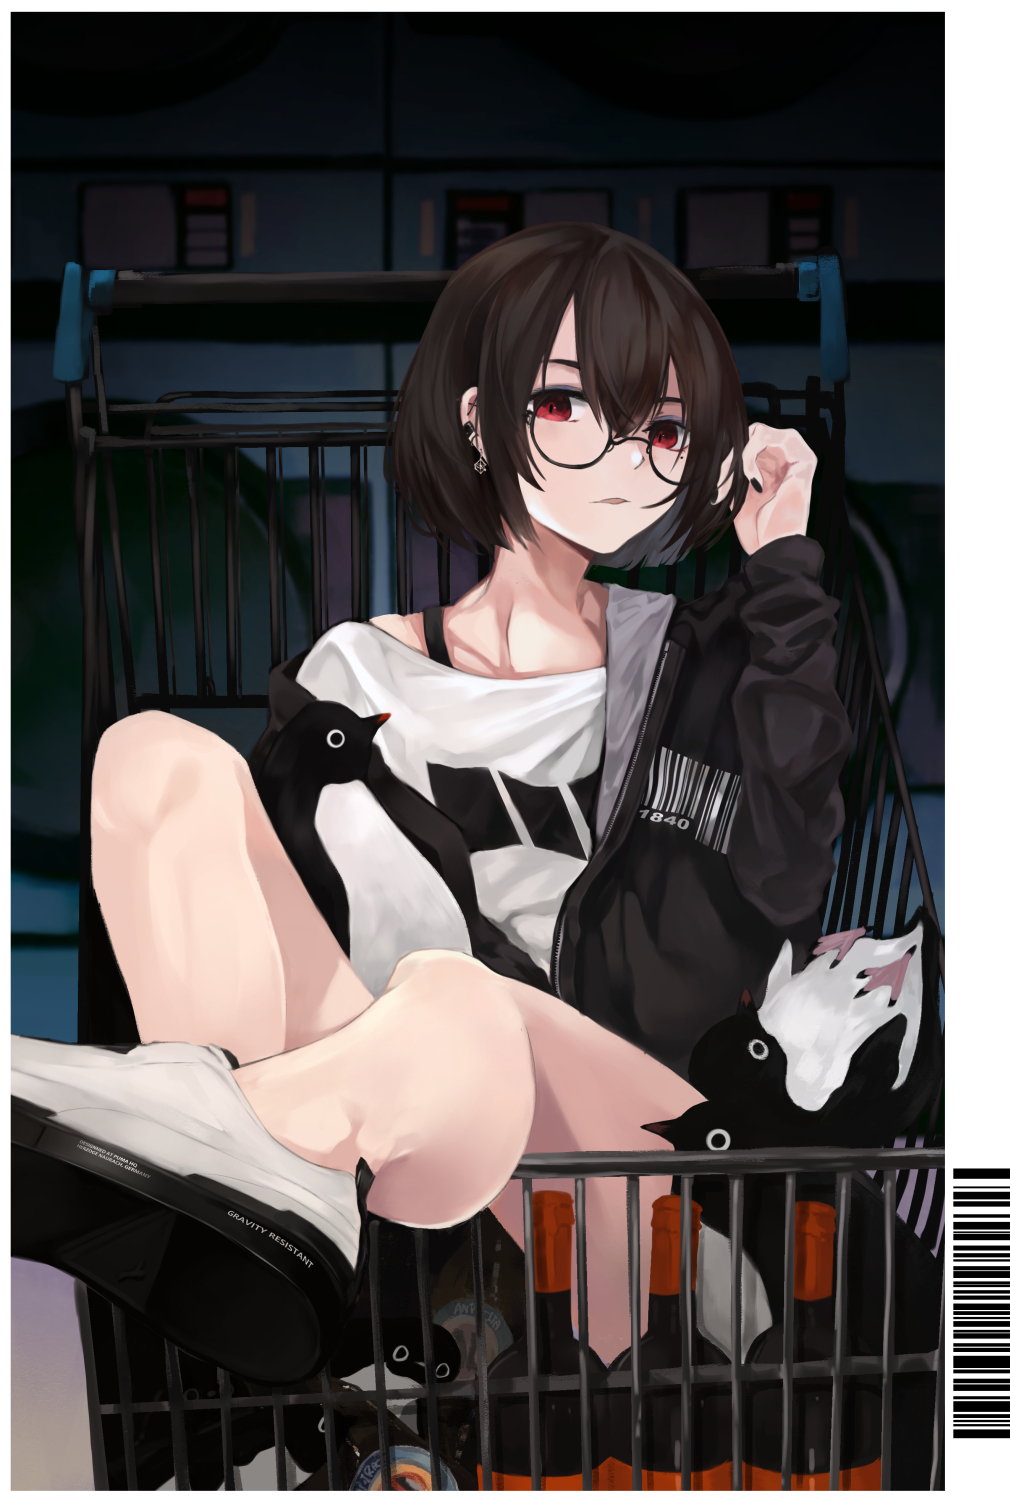 Penguins Black Hair Glasses Anime Girls Earring Shopping Cart Bottles Red Eyes Black Nails Barcode 1010x1500